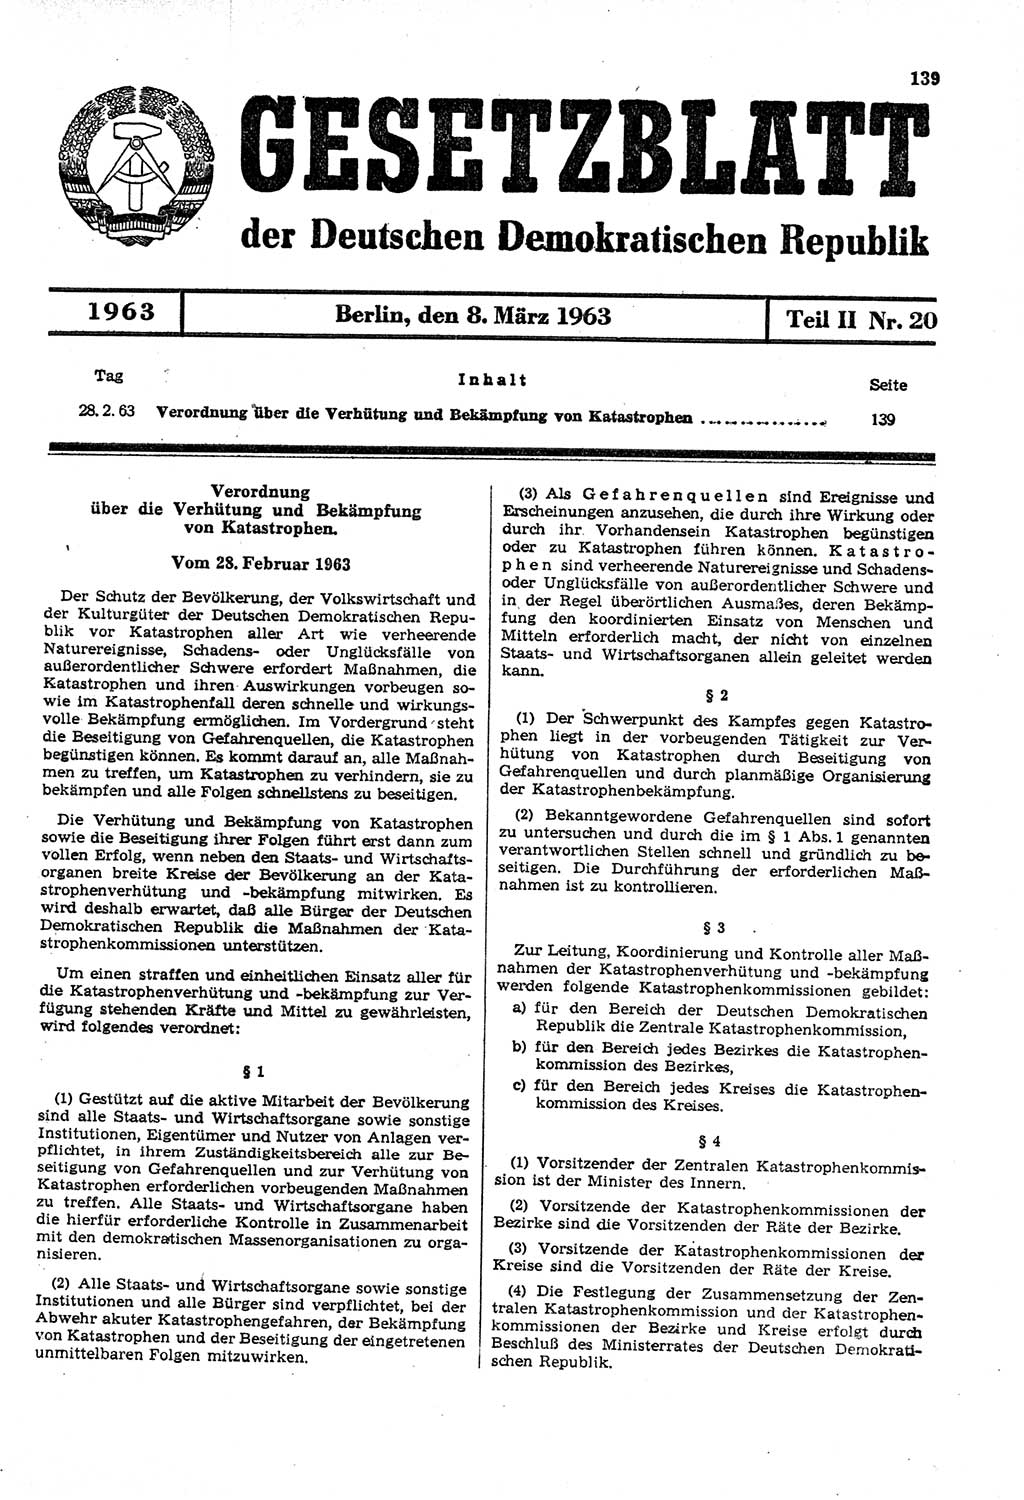 Gesetzblatt (GBl.) der Deutschen Demokratischen Republik (DDR) Teil ⅠⅠ 1963, Seite 139 (GBl. DDR ⅠⅠ 1963, S. 139)